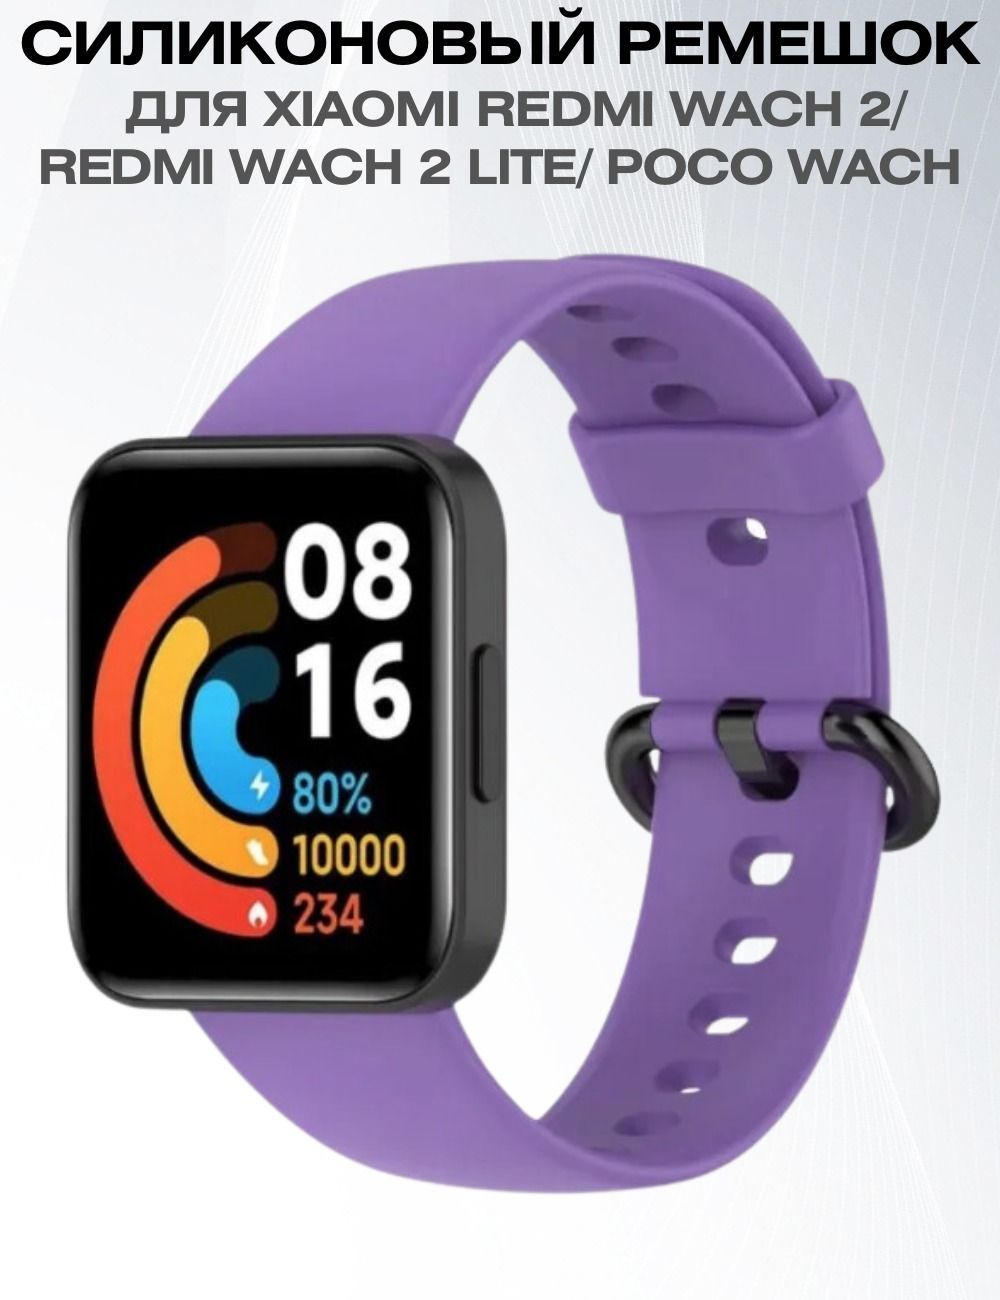 Установить часы redmi watch. Ремешки на редми вотч 2. Смарт часы редми вотч. Redmi watch 2 Lite. Redmi watch 2 Lite ремешки.